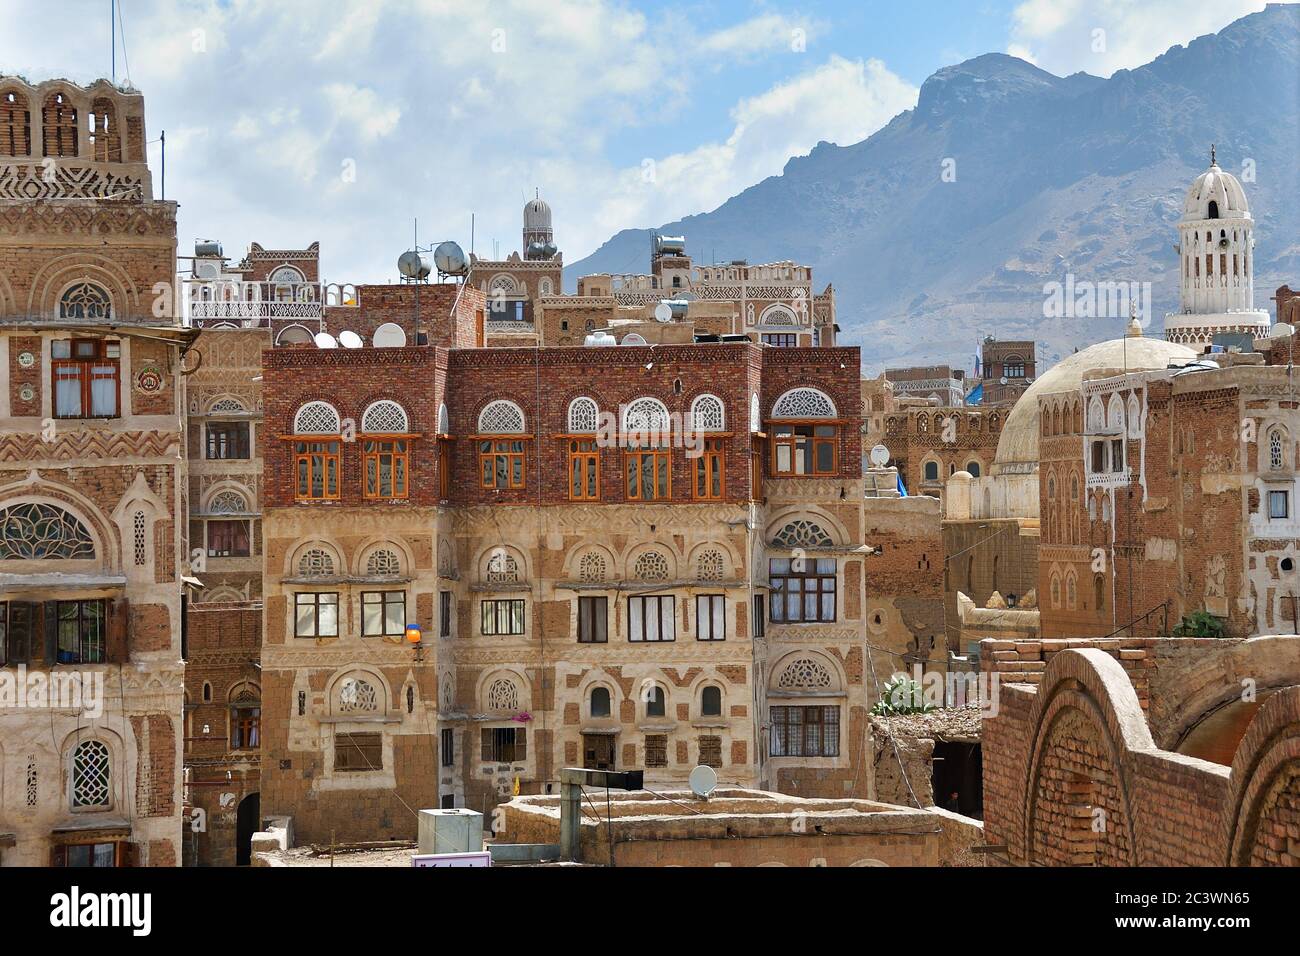 Sanaa, Yemen - 6 marzo 2010: La città vecchia di Sanaa è dichiarata patrimonio mondiale dell'UNESCO oggi distrusse a causa della guerra civile Foto Stock